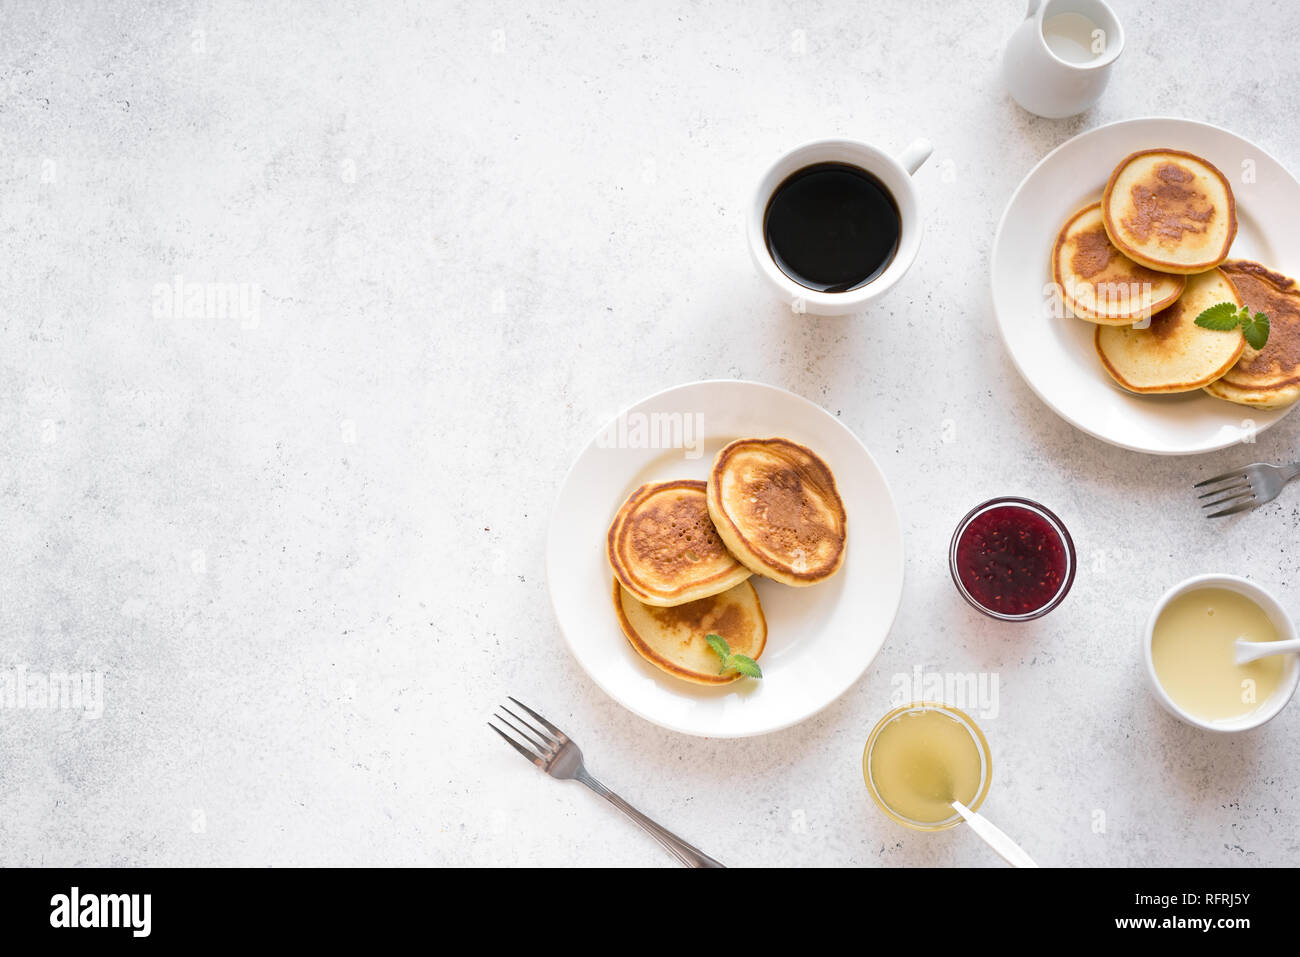 Pfannkuchen zum Frühstück. Hausgemachte Pfannkuchen mit verschiedenen Toppings, Marmelade, Honig und Kaffee - Frühstück für Zwei, Wochenende Familie Frühstück, Ansicht von oben, Kopieren s Stockfoto